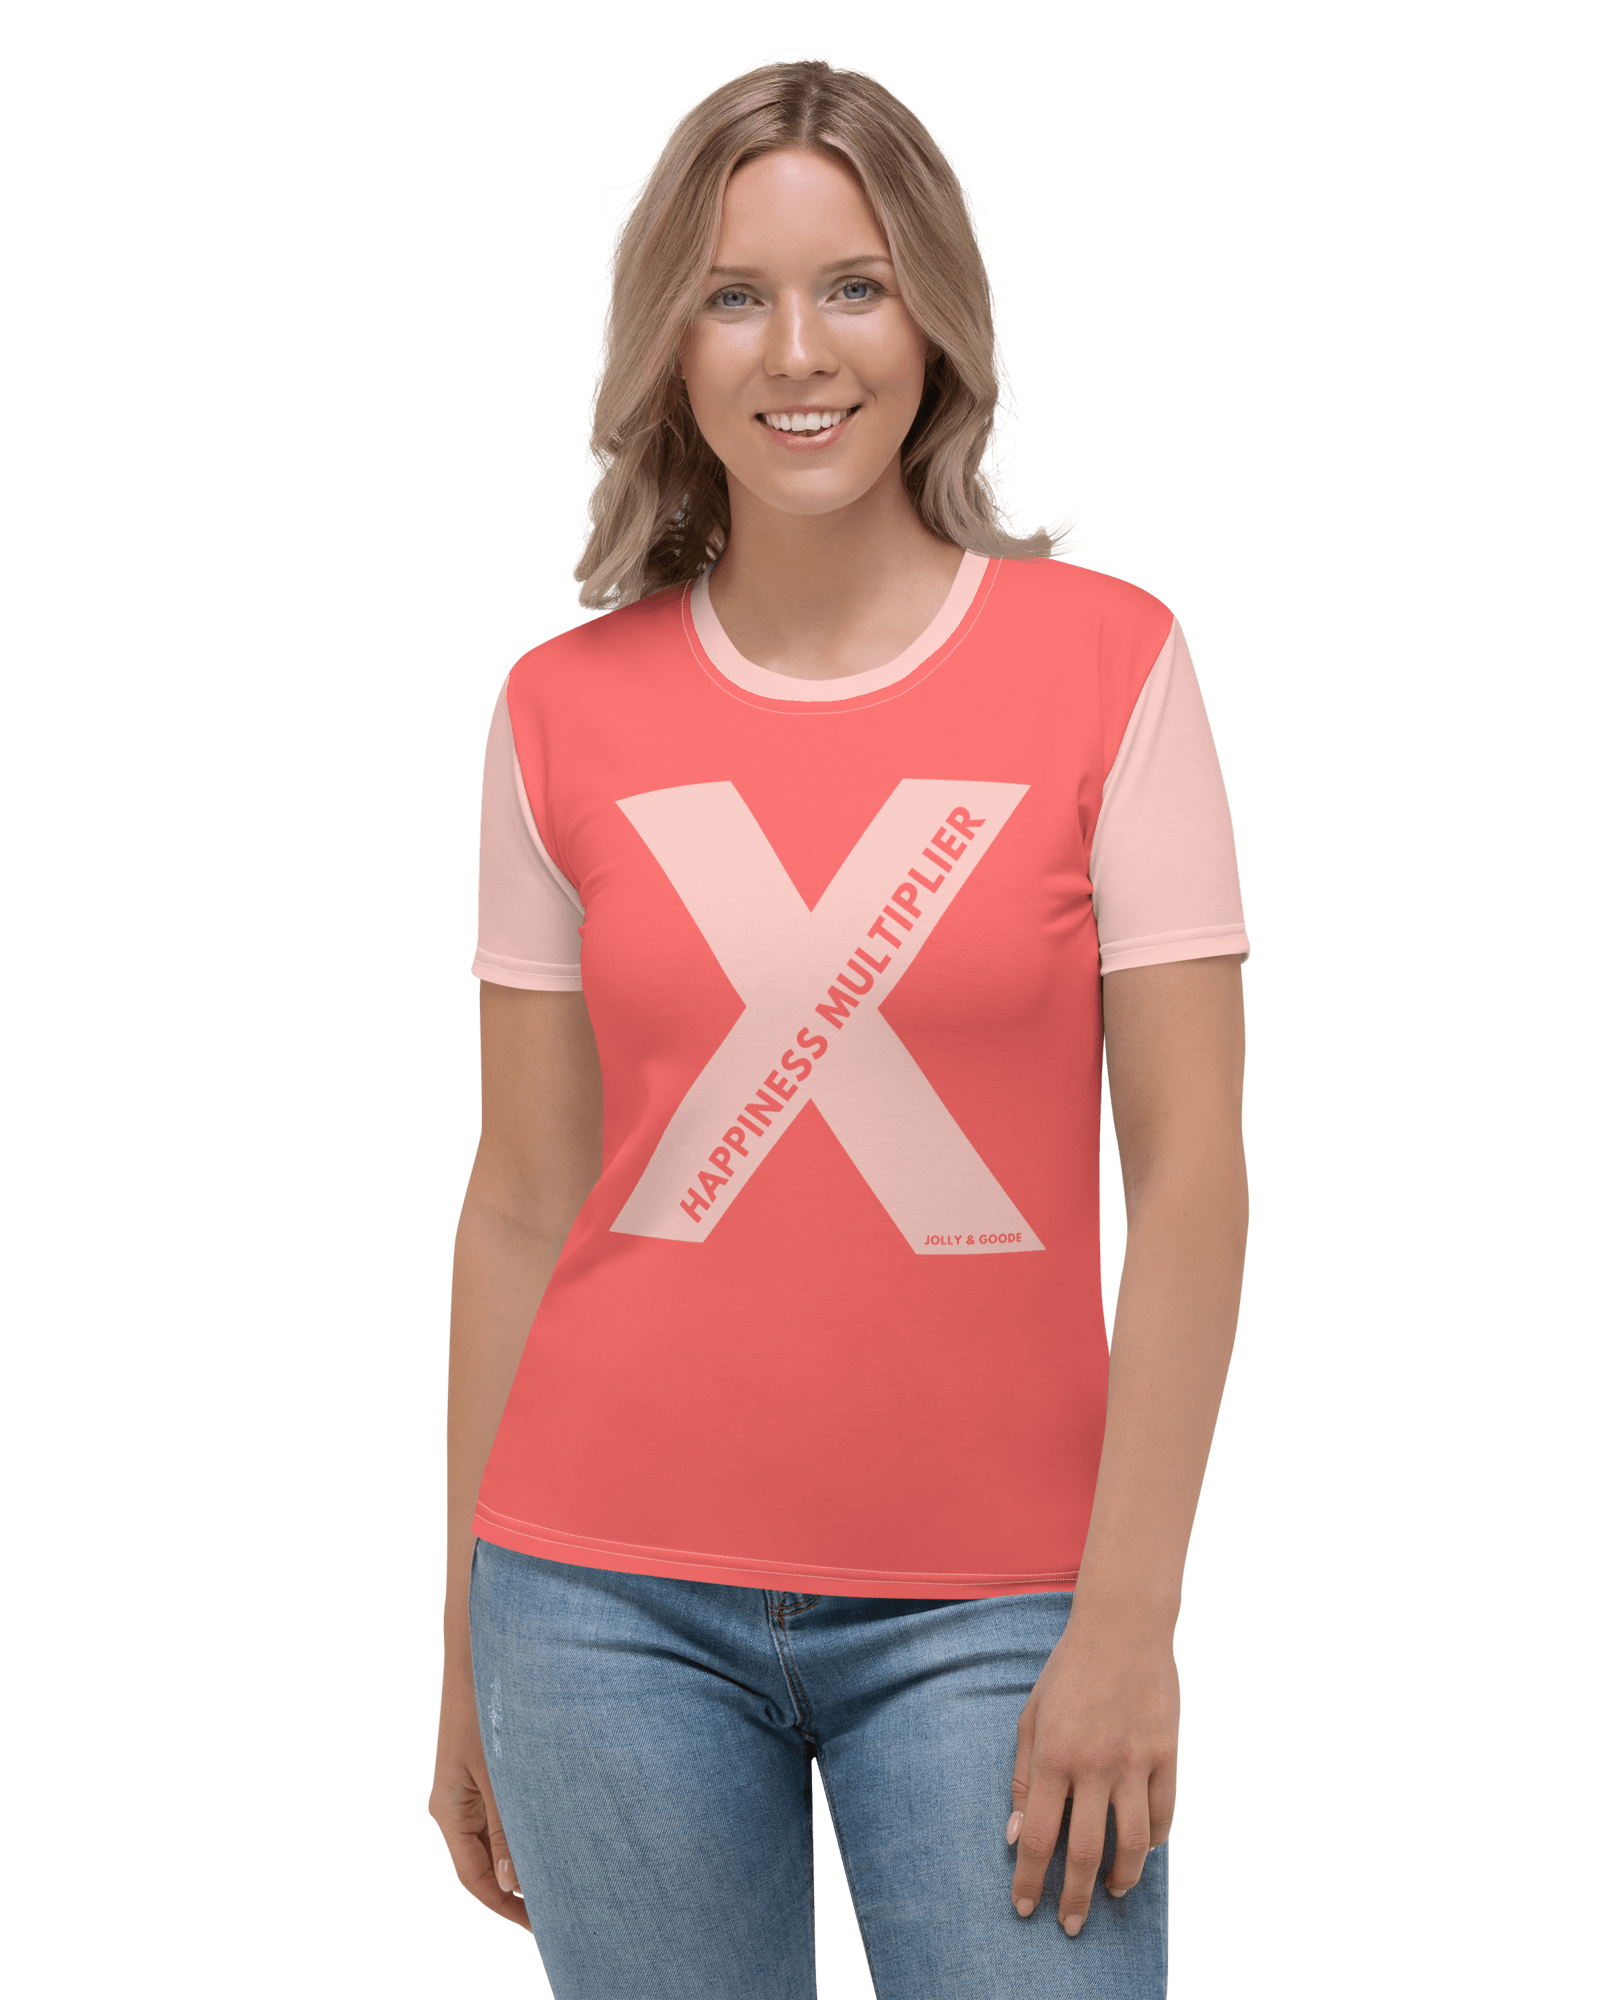 Happiness Multiplier Women's T-shirt XS Jolly & Goode